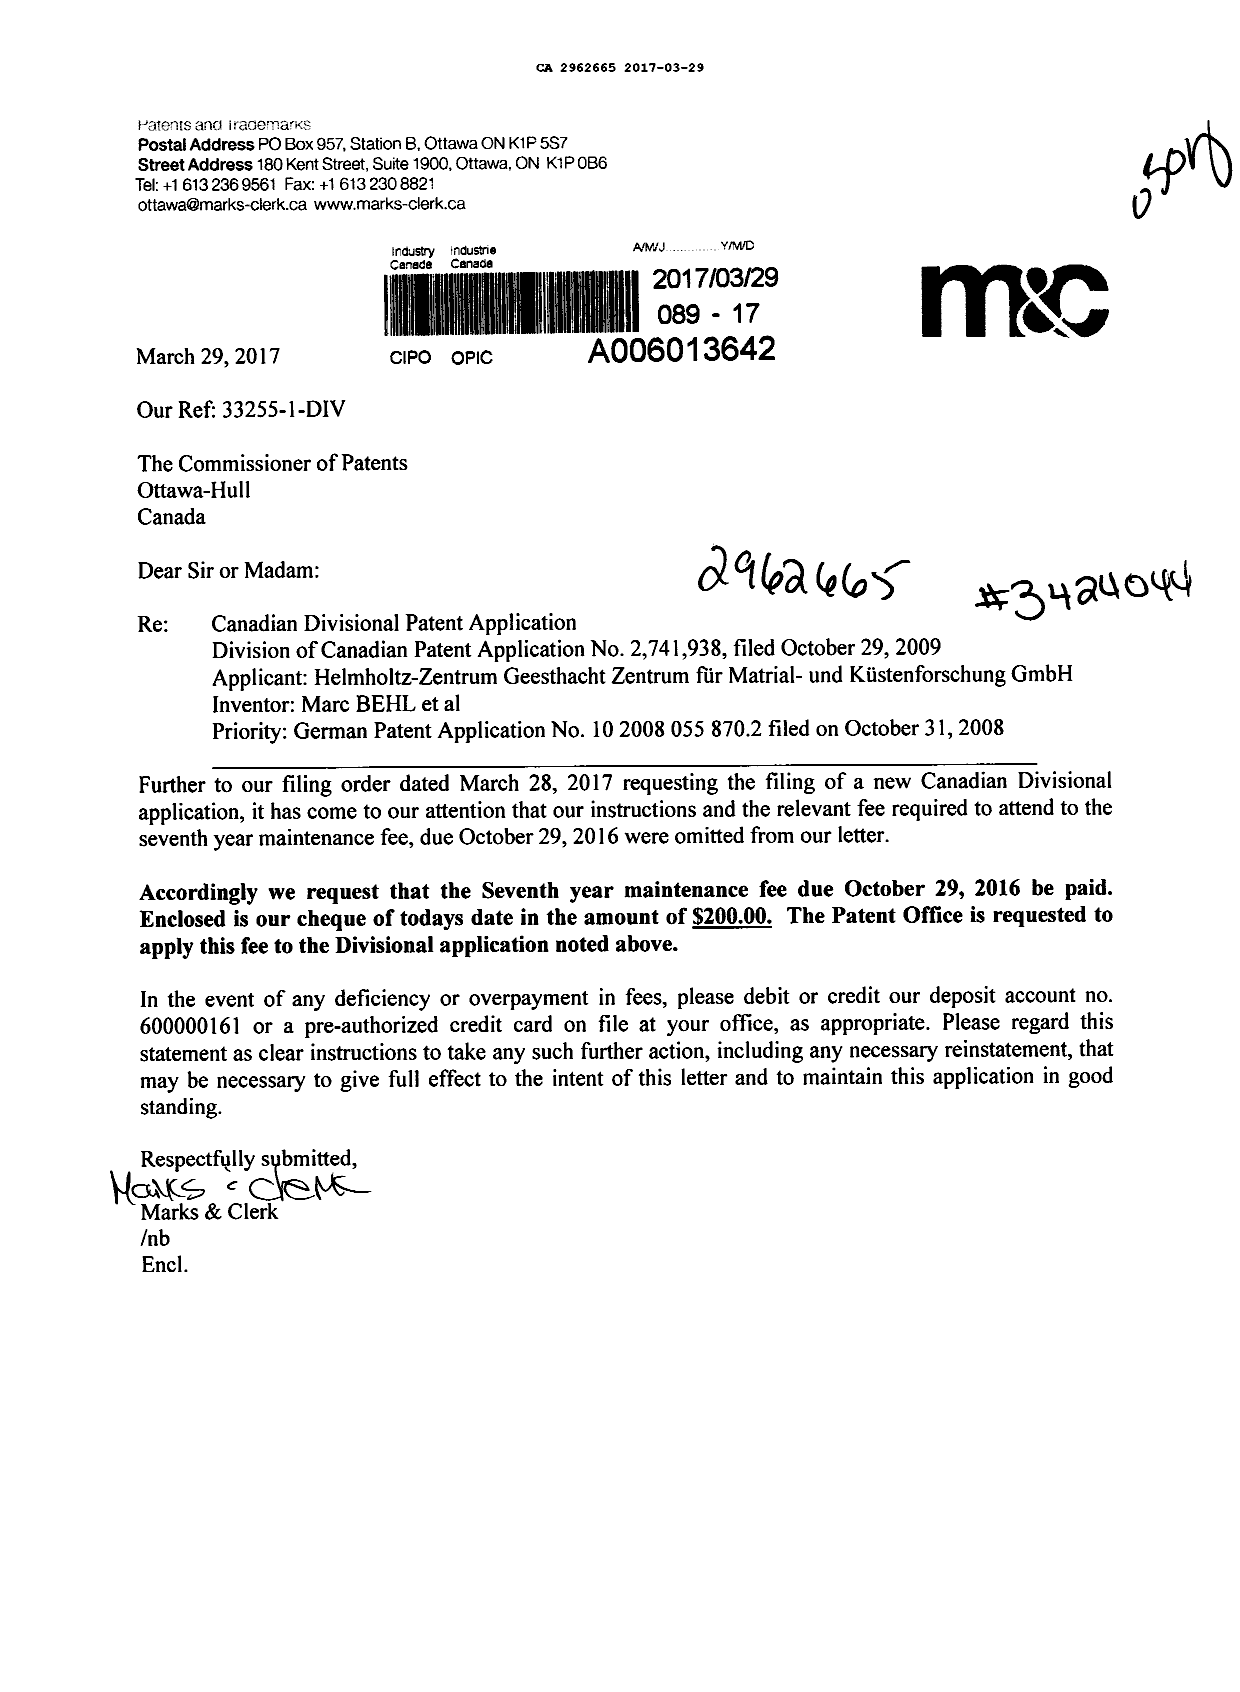 Document de brevet canadien 2962665. Paiement de taxe périodique 20170329. Image 1 de 1